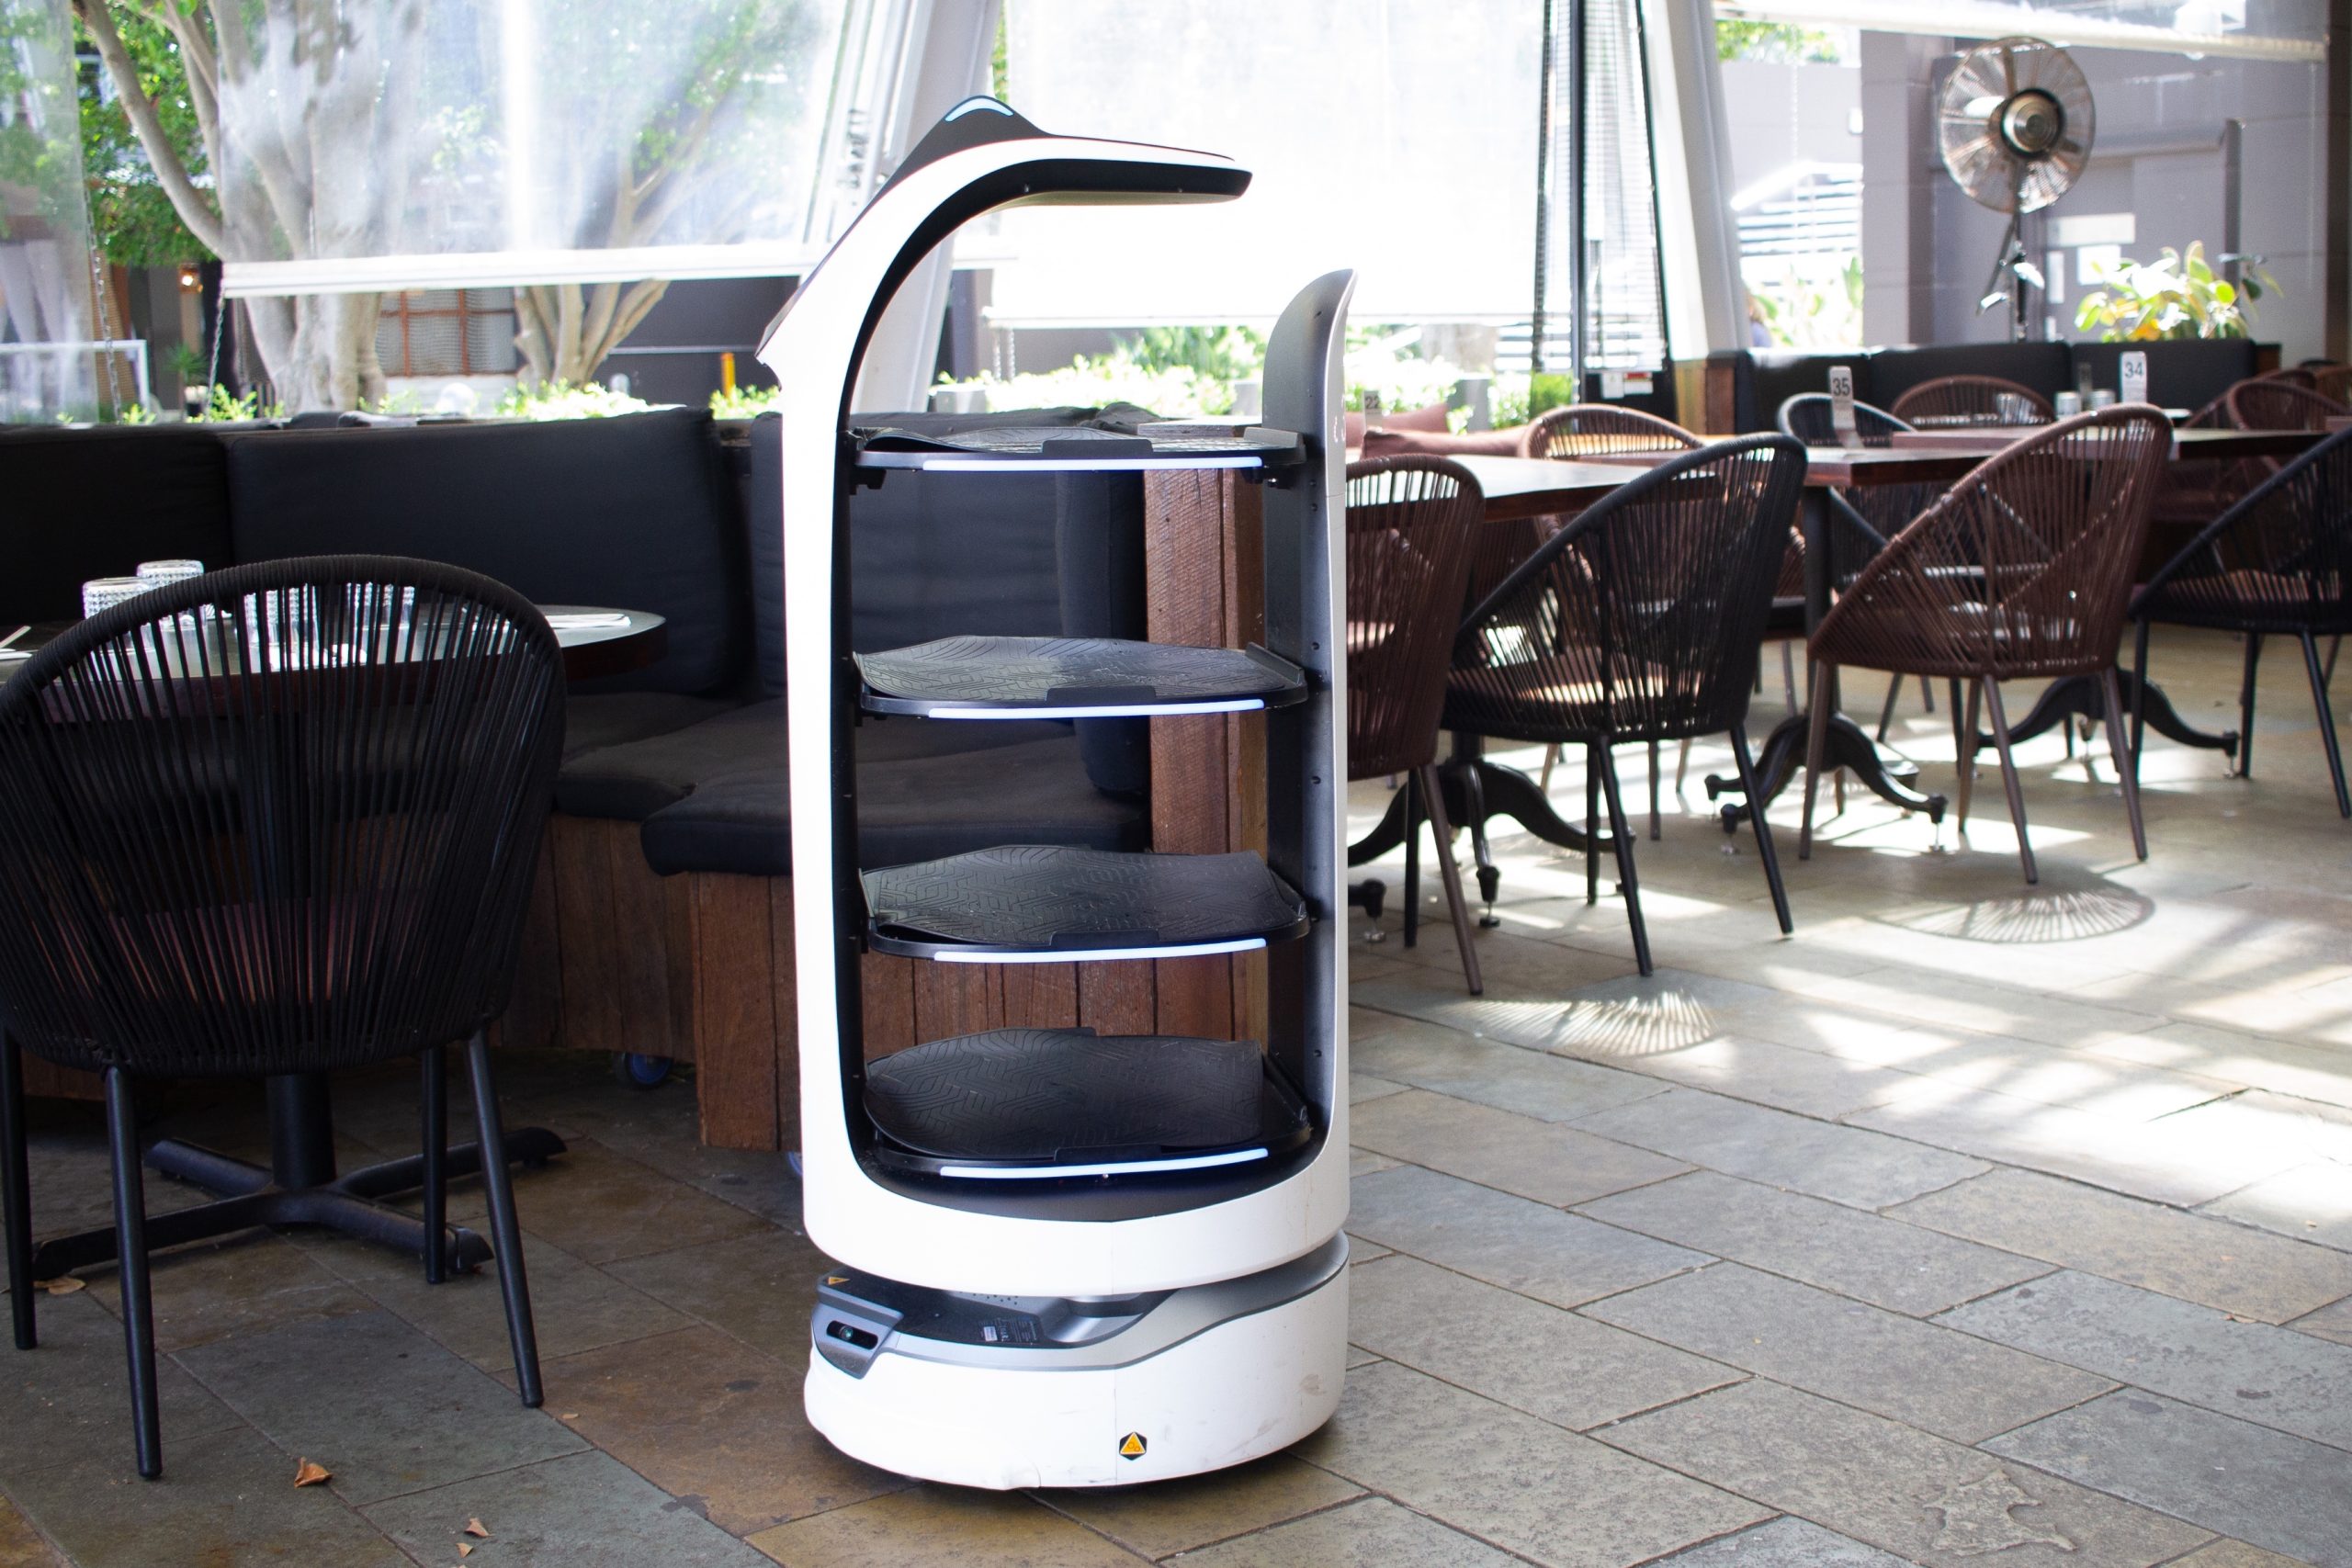 BellaBot at Casa – Robot Waiter